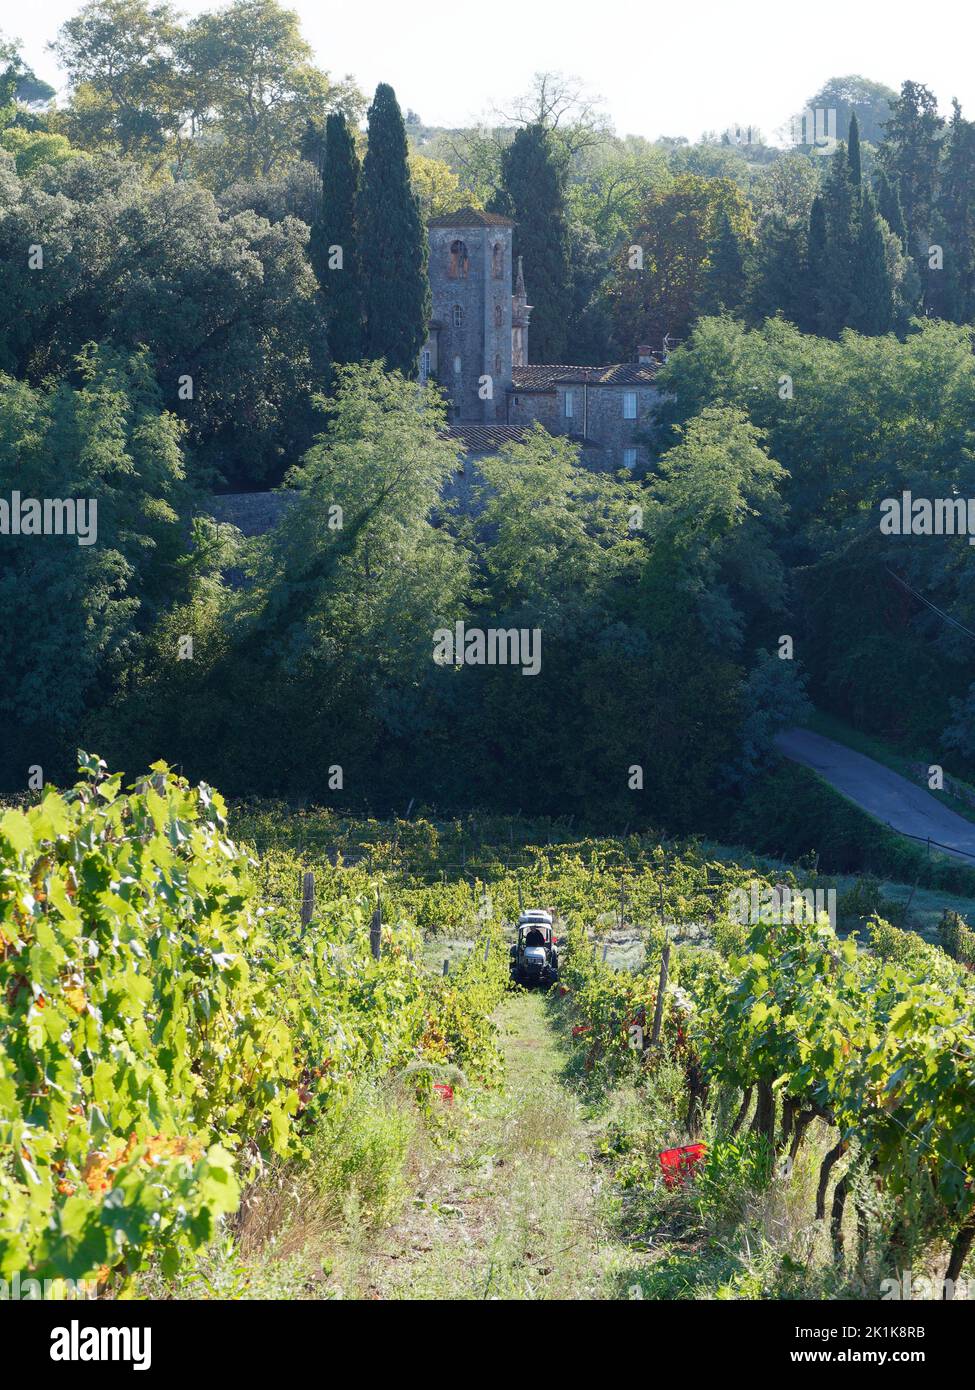 Vendange. Tracteur dans un vignoble biologique à Camigliano près de Lucca en Toscane, Italie. Les boîtes rouges sont prêtes à être remplies de raisins. Banque D'Images